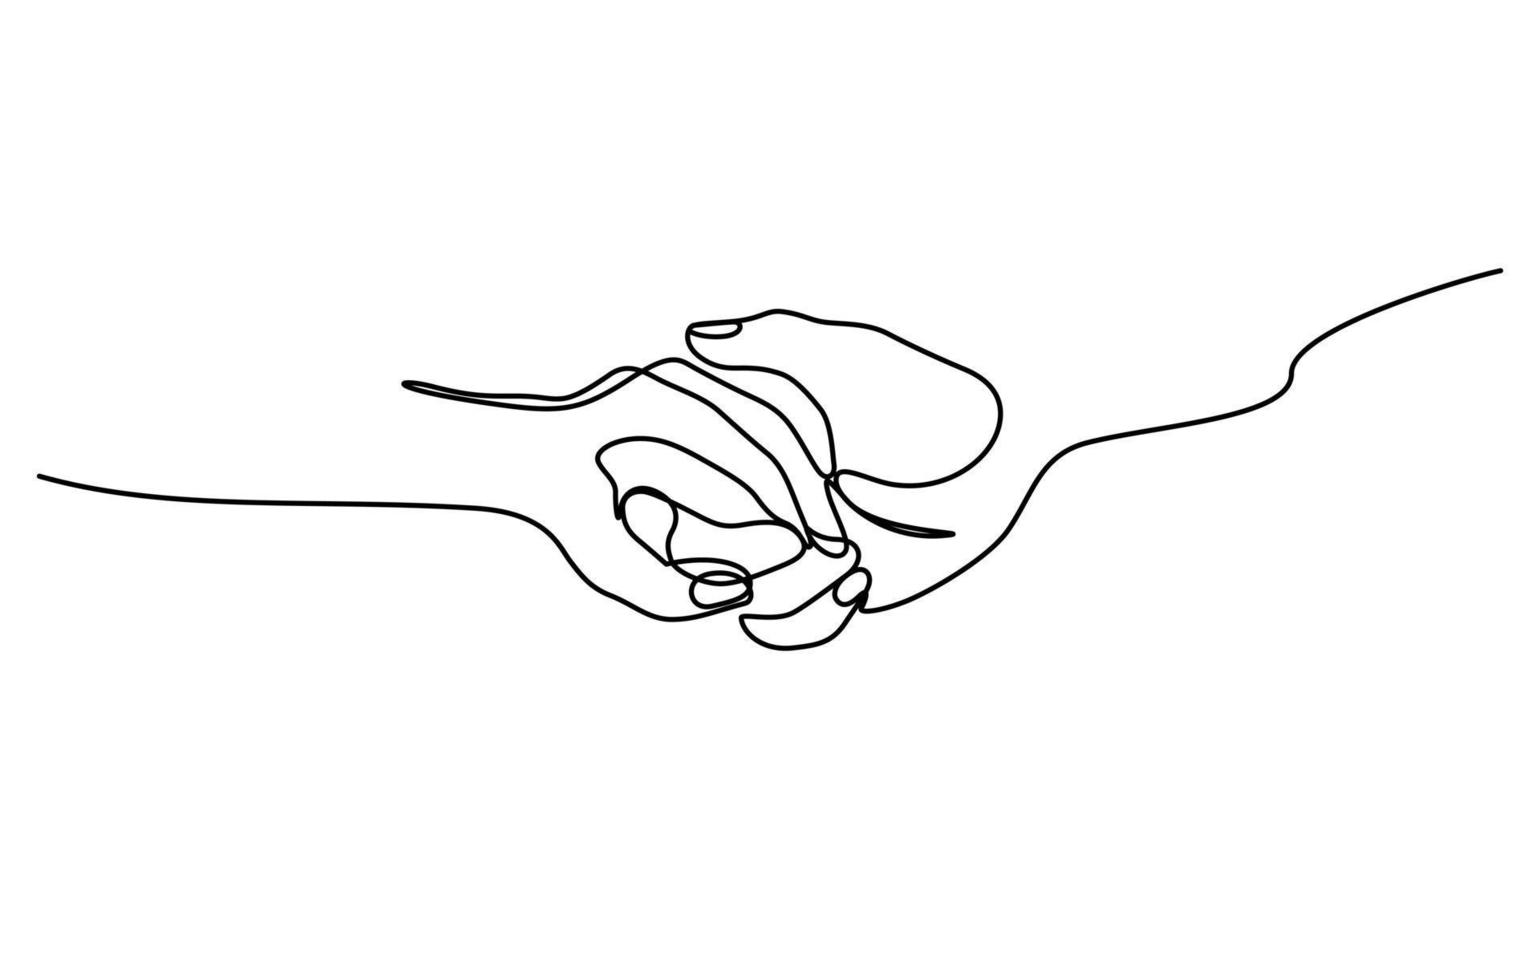 zwei hände, die in durchgehender linienzeichnung im minimalistischen stil halten vektor